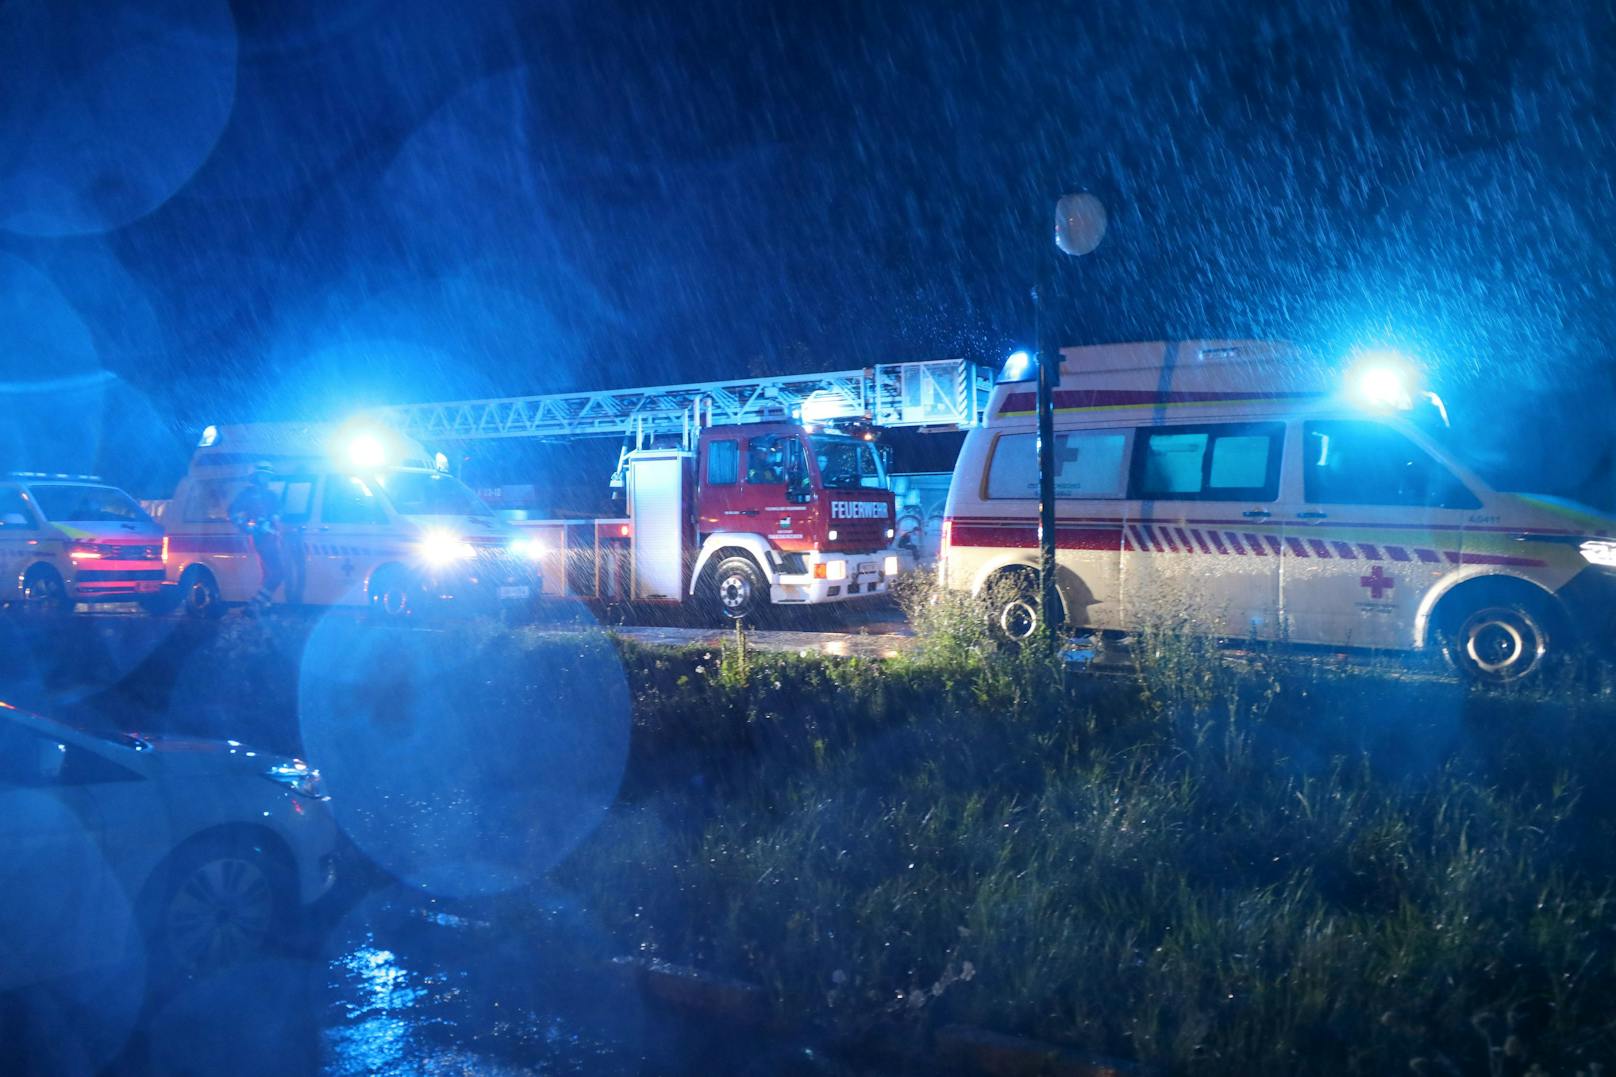 Brandermittler des Landeskriminalamtes Oberösterreich (LKA) übernahmen die Ermittlungen.